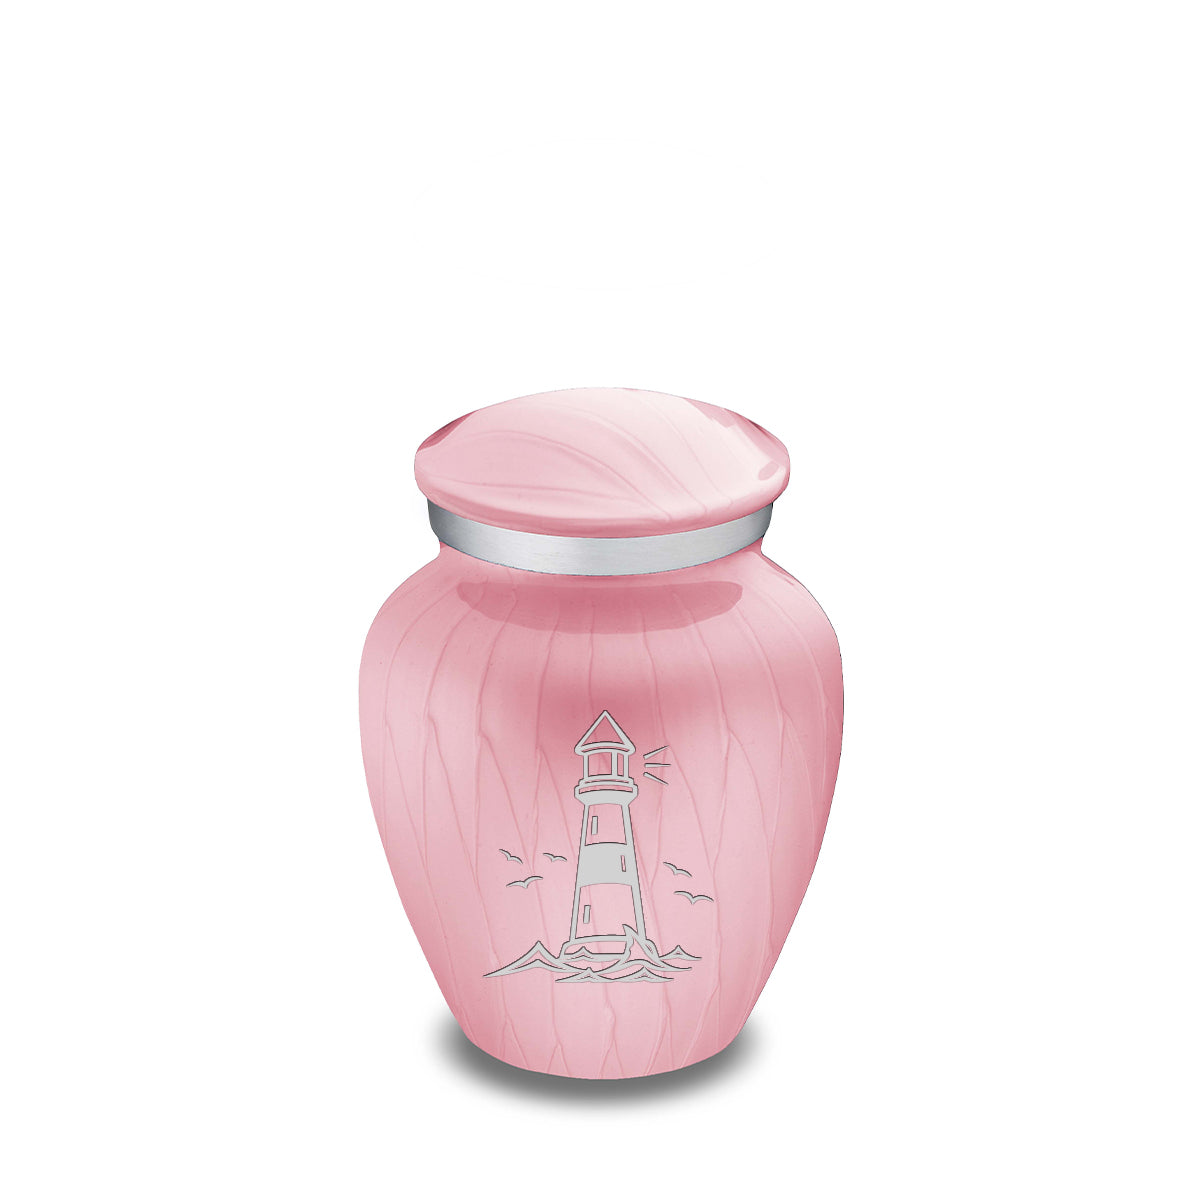 Keepsake Embrace Pearl Light Pink Lighthouse Cremation Urn